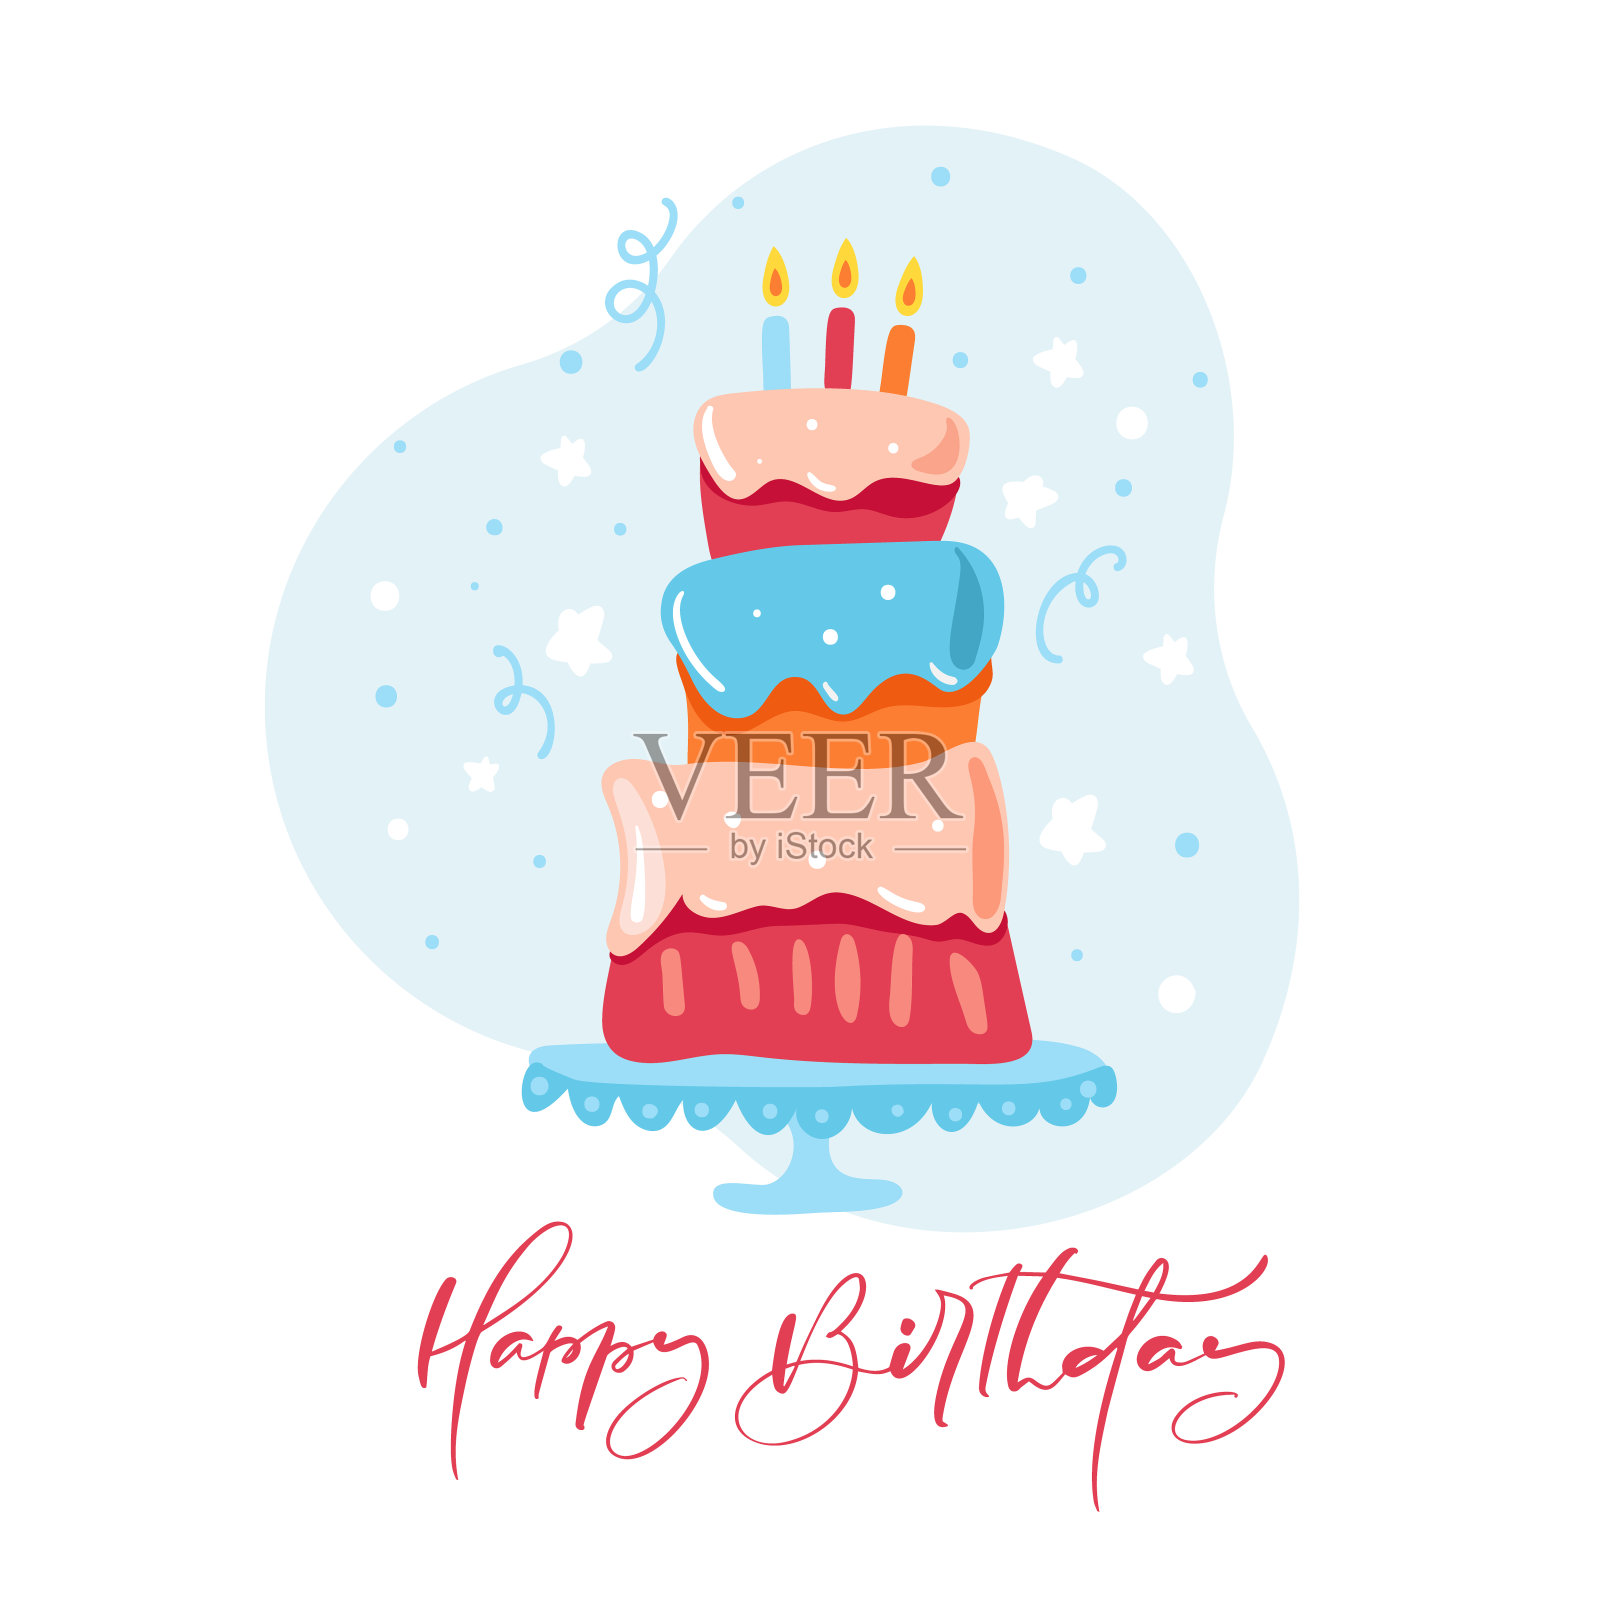 生日快乐的书法字母文字邀请与甜蜜的蛋糕。矢量插图贺卡设计模板素材